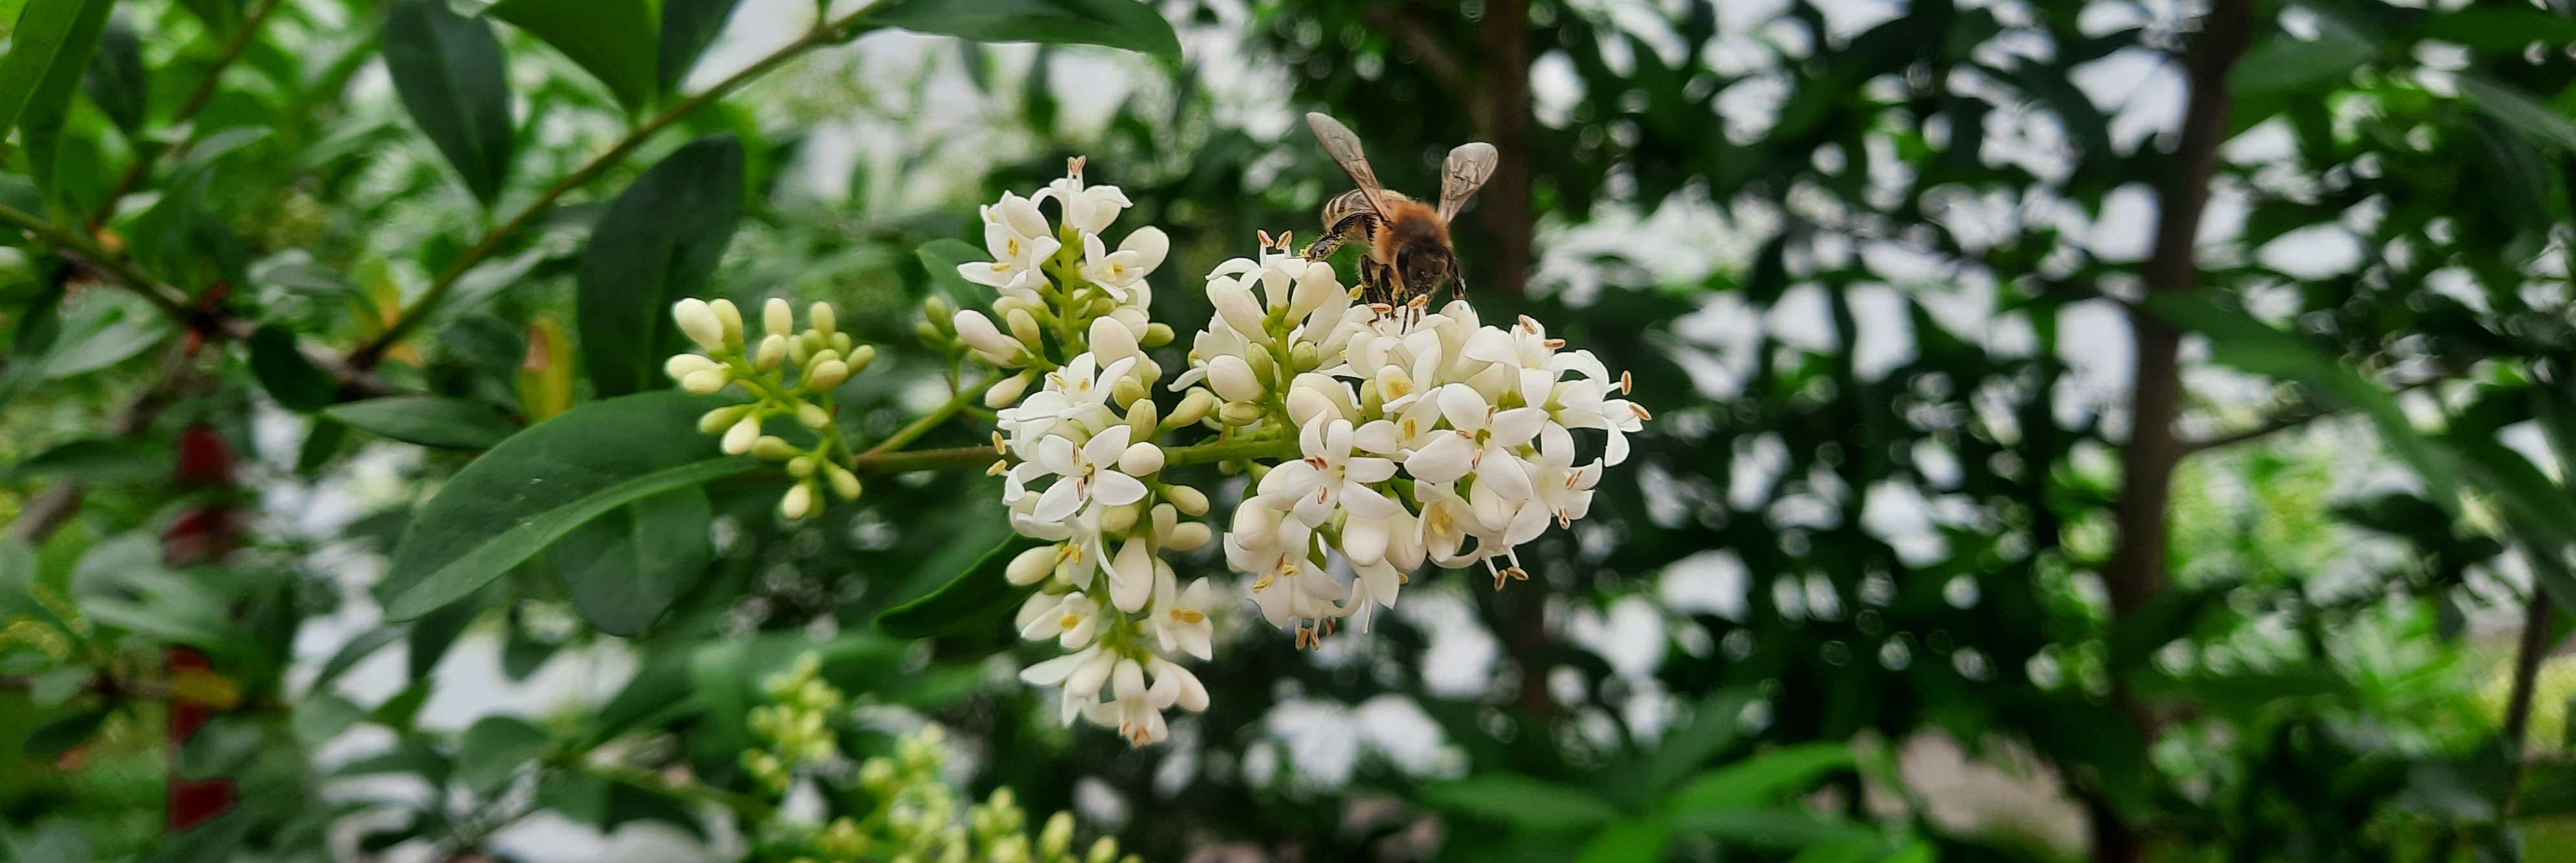 Na białym kwiatku siedzi pszczoła